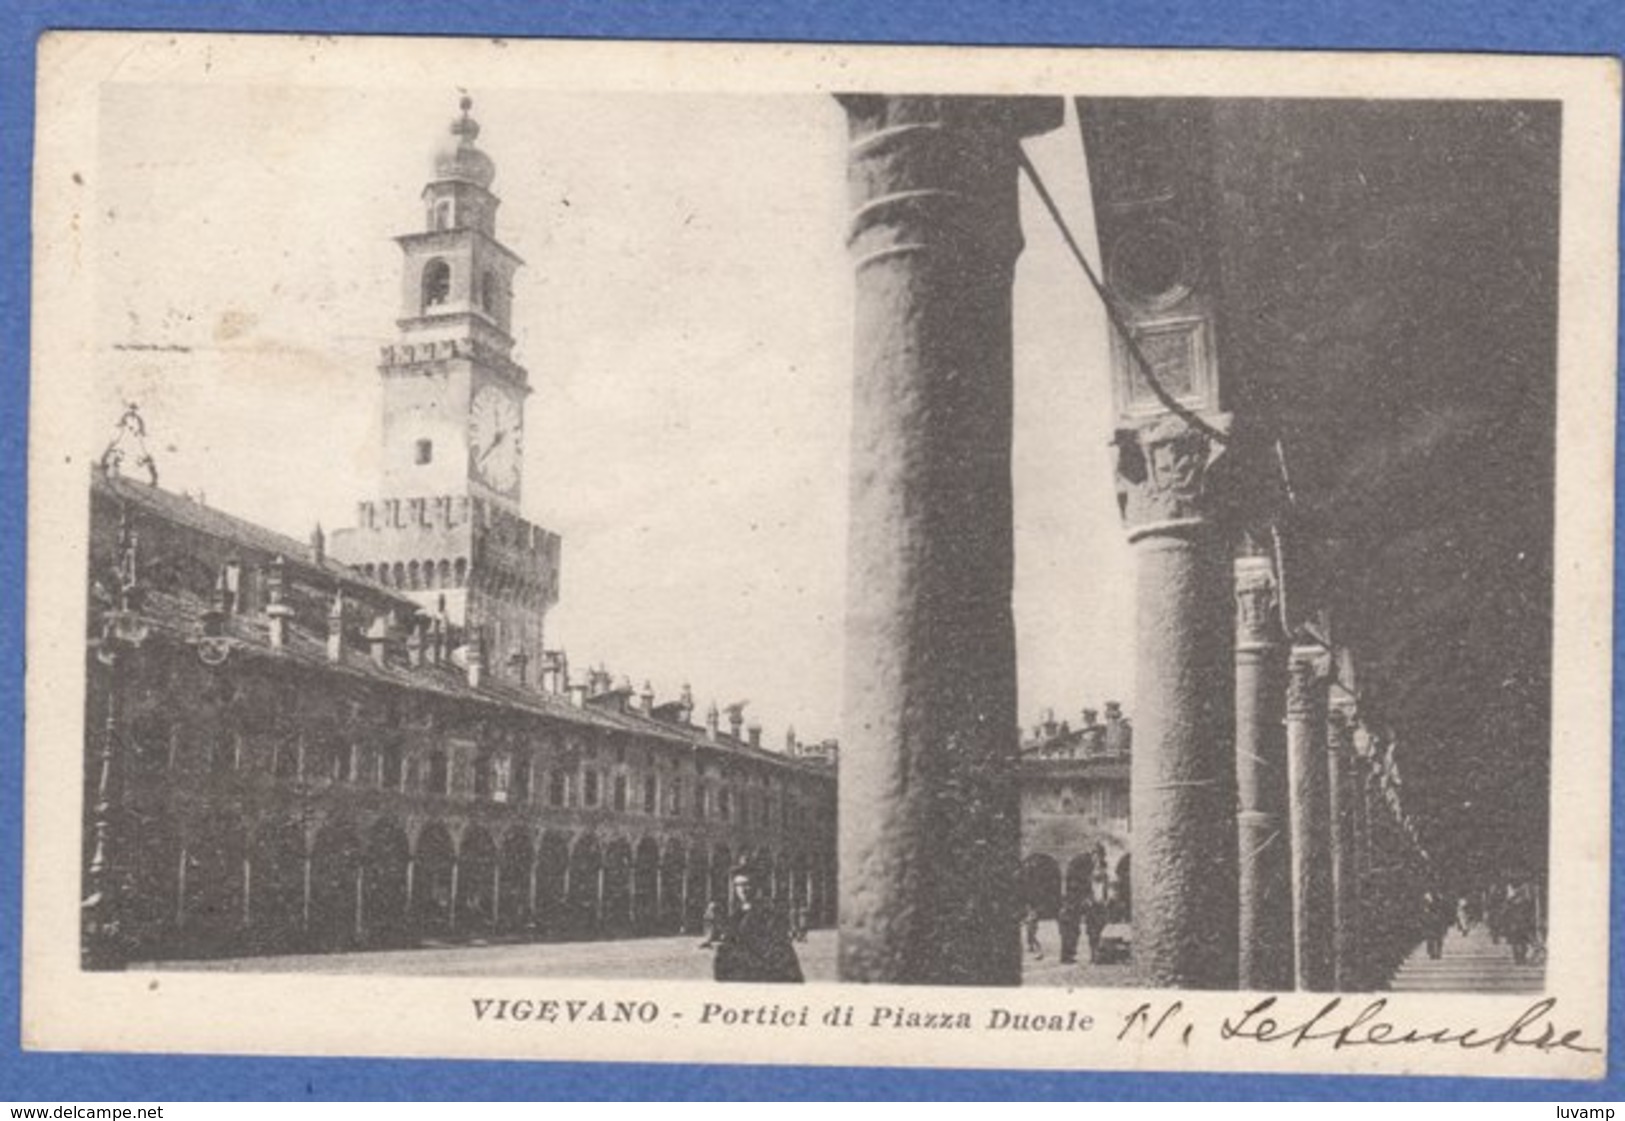 VIGEVANO (Pavia) -F/P B/N Cartonata (220709) - Vigevano